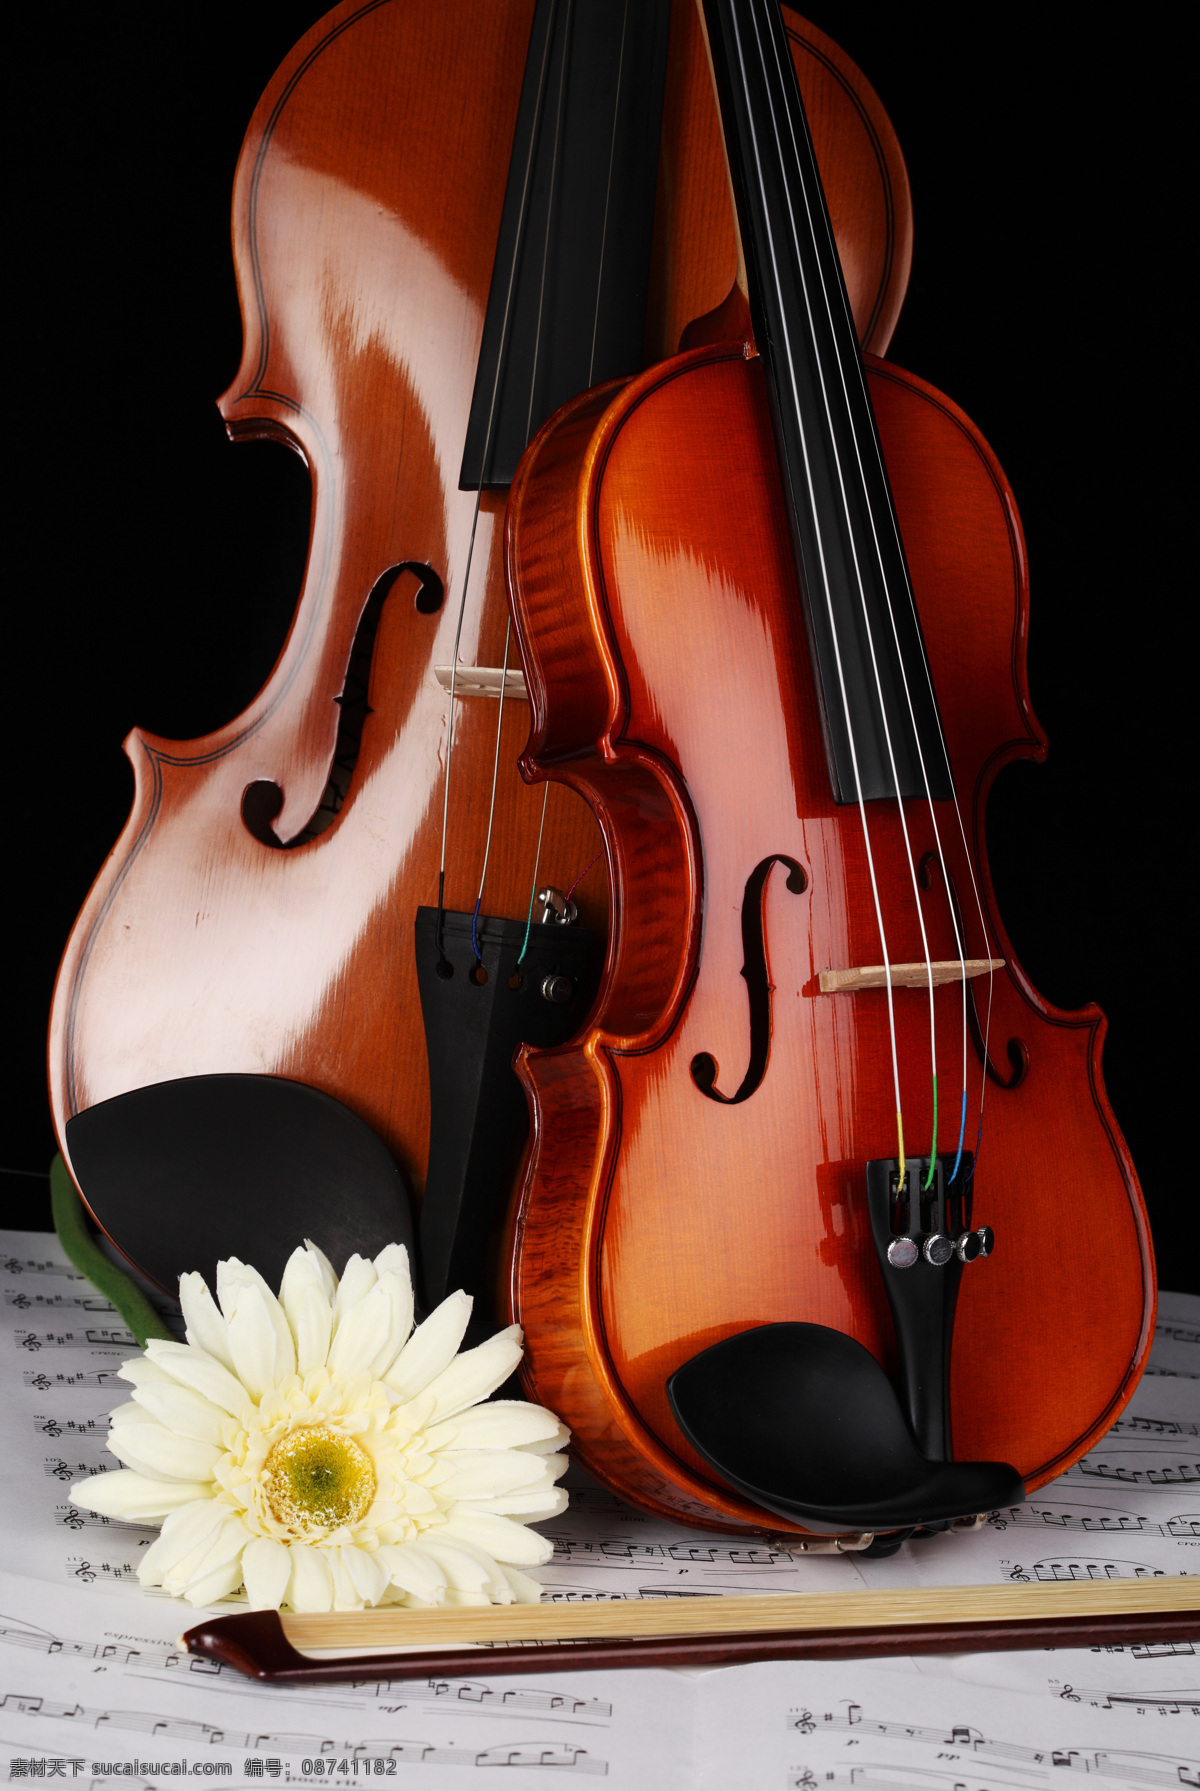 小提琴 大提琴 高清图片素材 菊花 乐谱 文化艺术 舞蹈音乐 音符 高清小提琴 中提琴 psd源文件